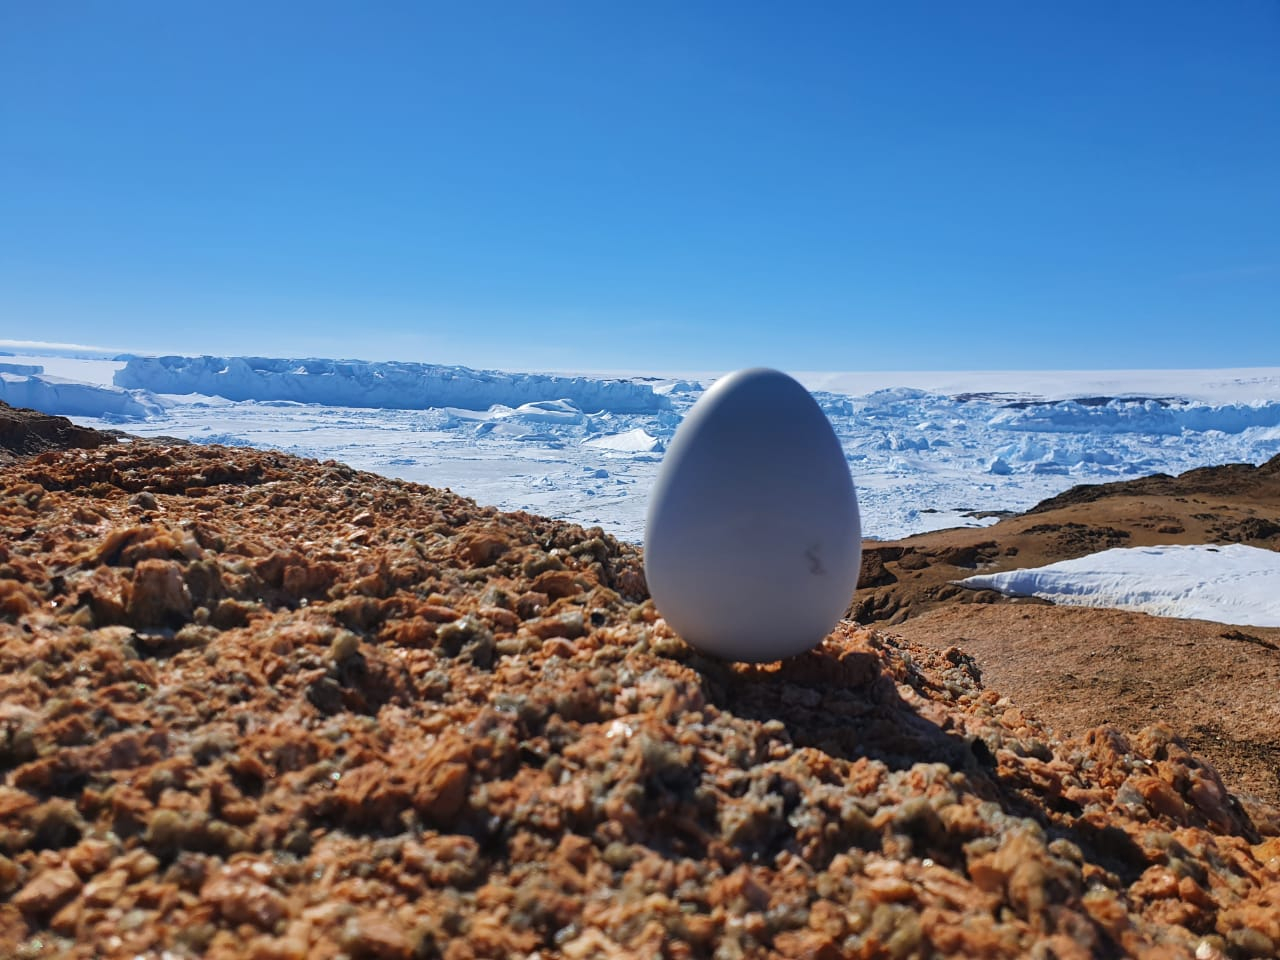 Арктические технологии помогли обеспечить интернетом вещей Антарктику